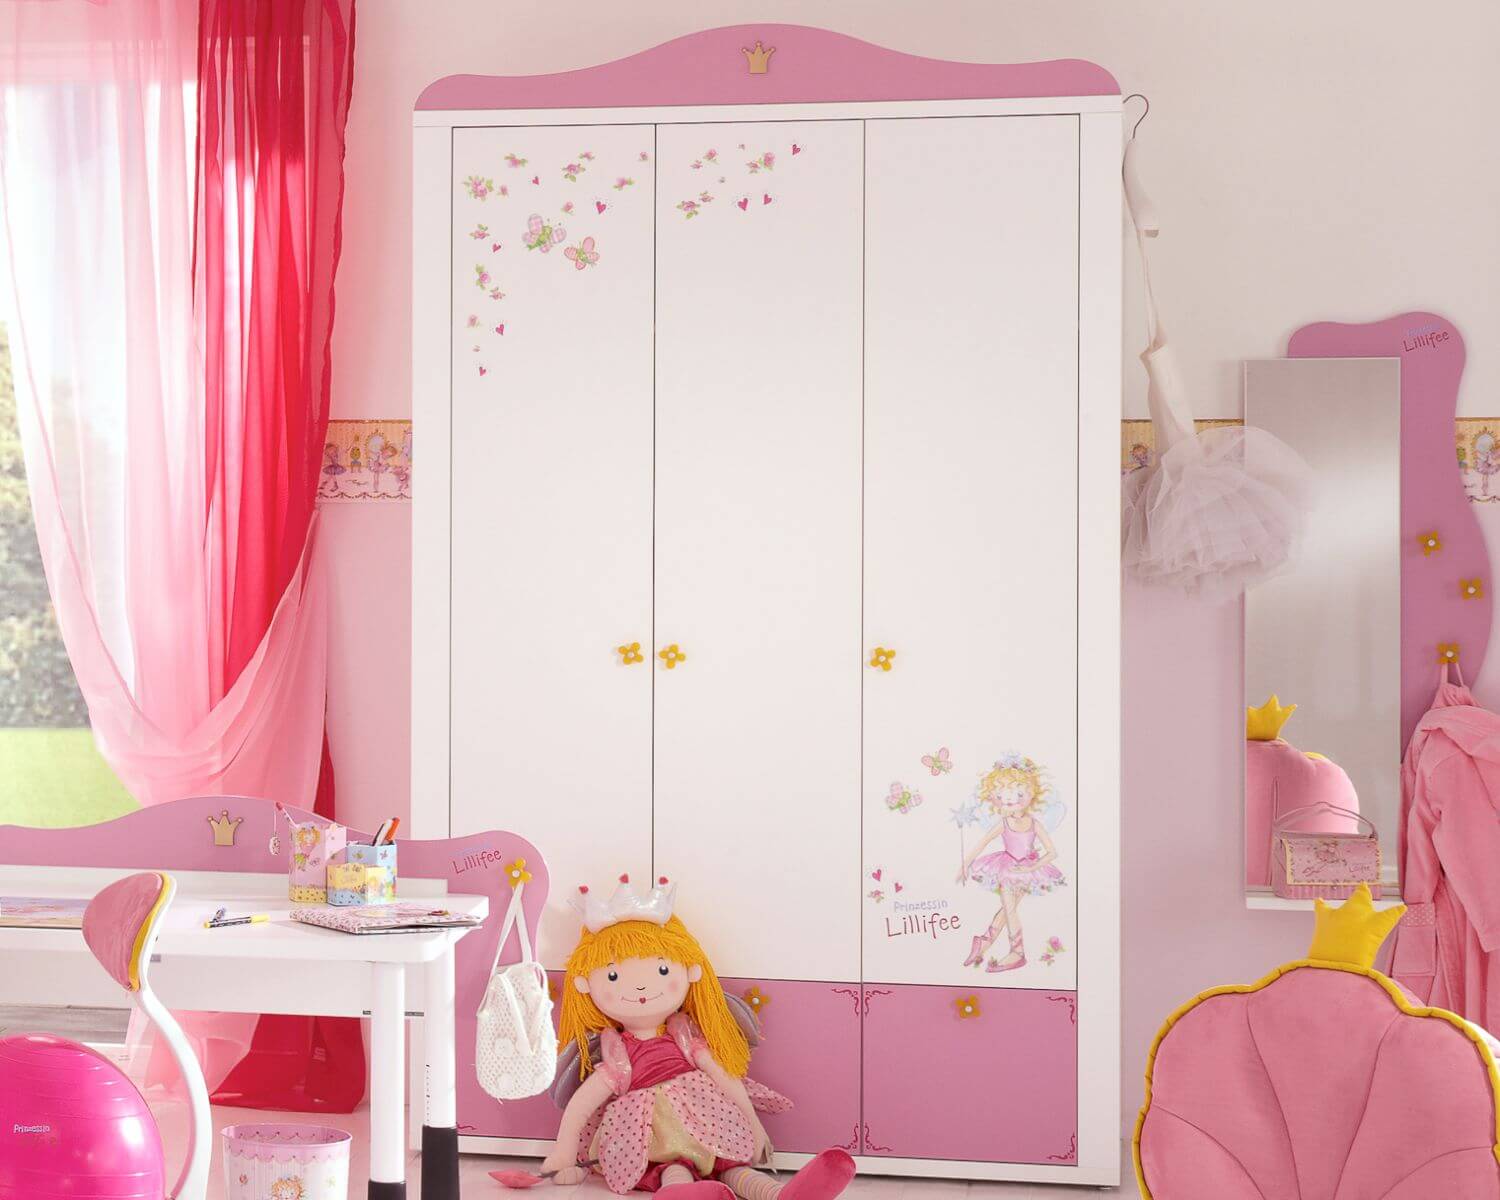 Prinzessin Lillifee Kinderzimmer Kleiderschrank • slewo.com